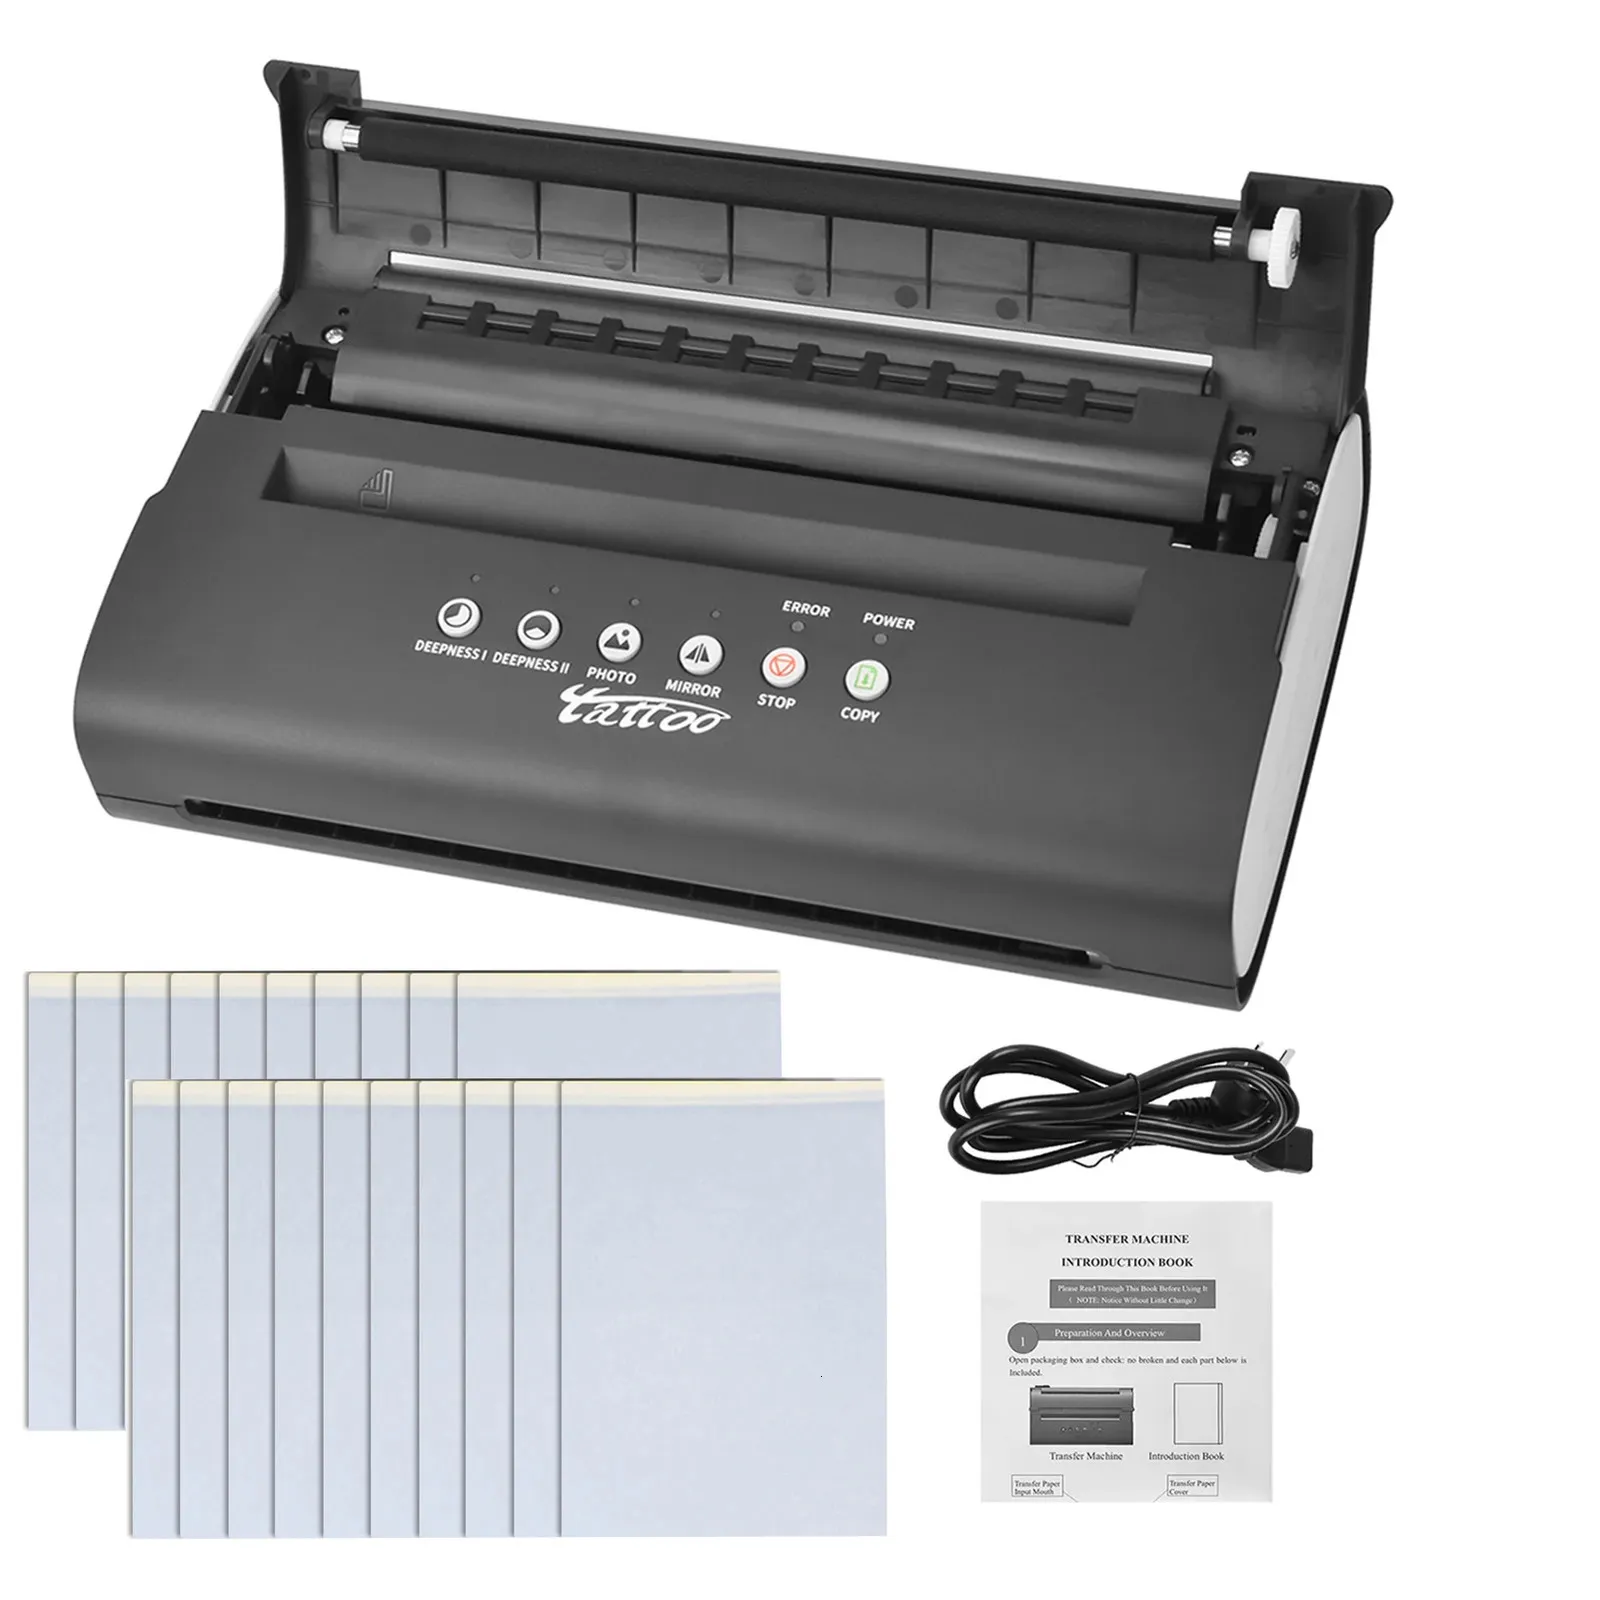 Machine à tatouer transfert pochoir imprimante dessin fabricant thermique copieur ligne impression pour 231129